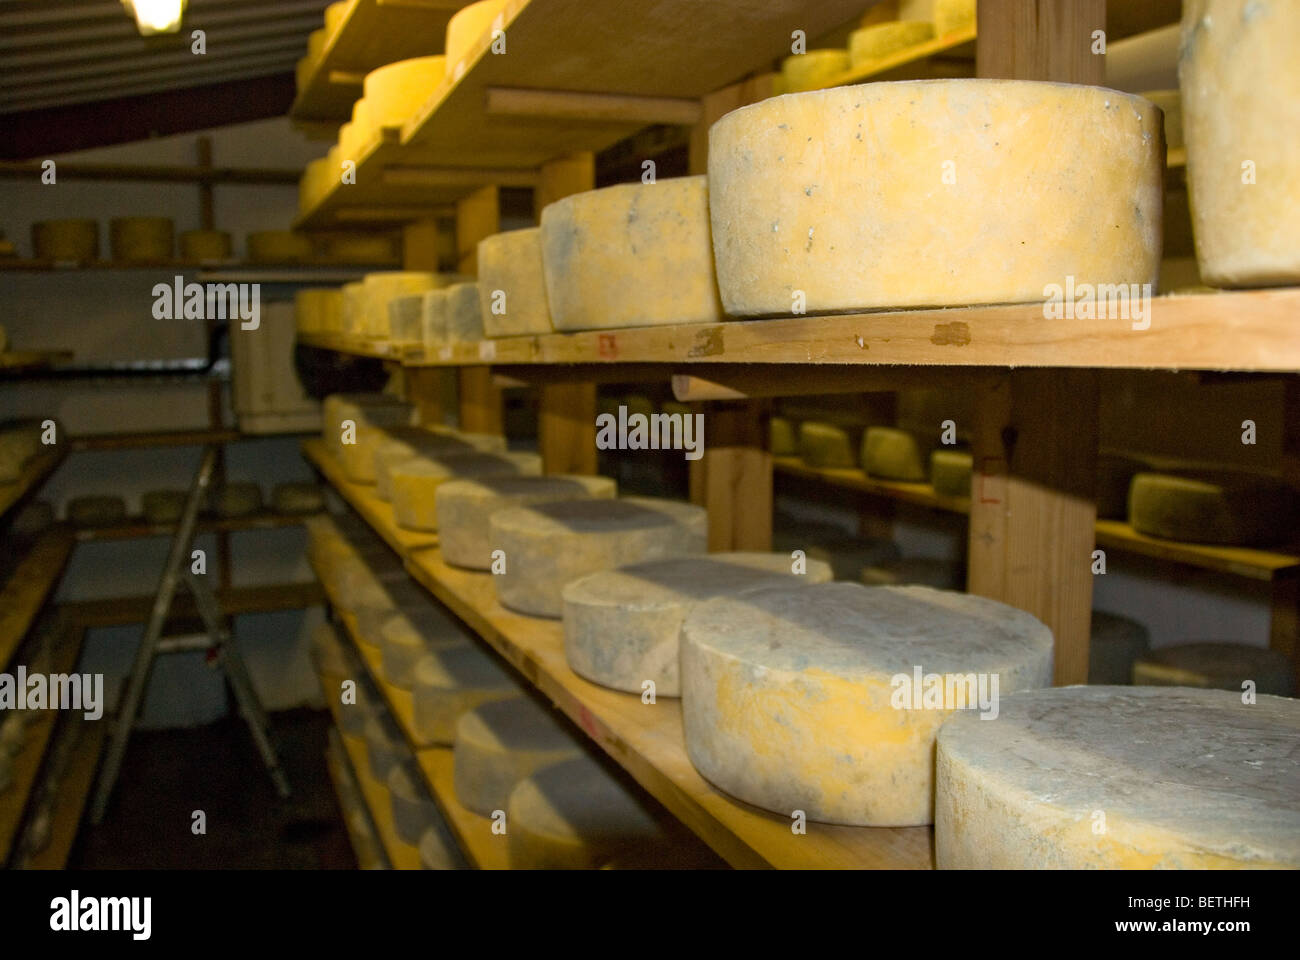 Peu de fromages Hereford sur des étagères à maturation Fromagerie Monkland, près de Leominster, Herefordshire, Angleterre. Banque D'Images